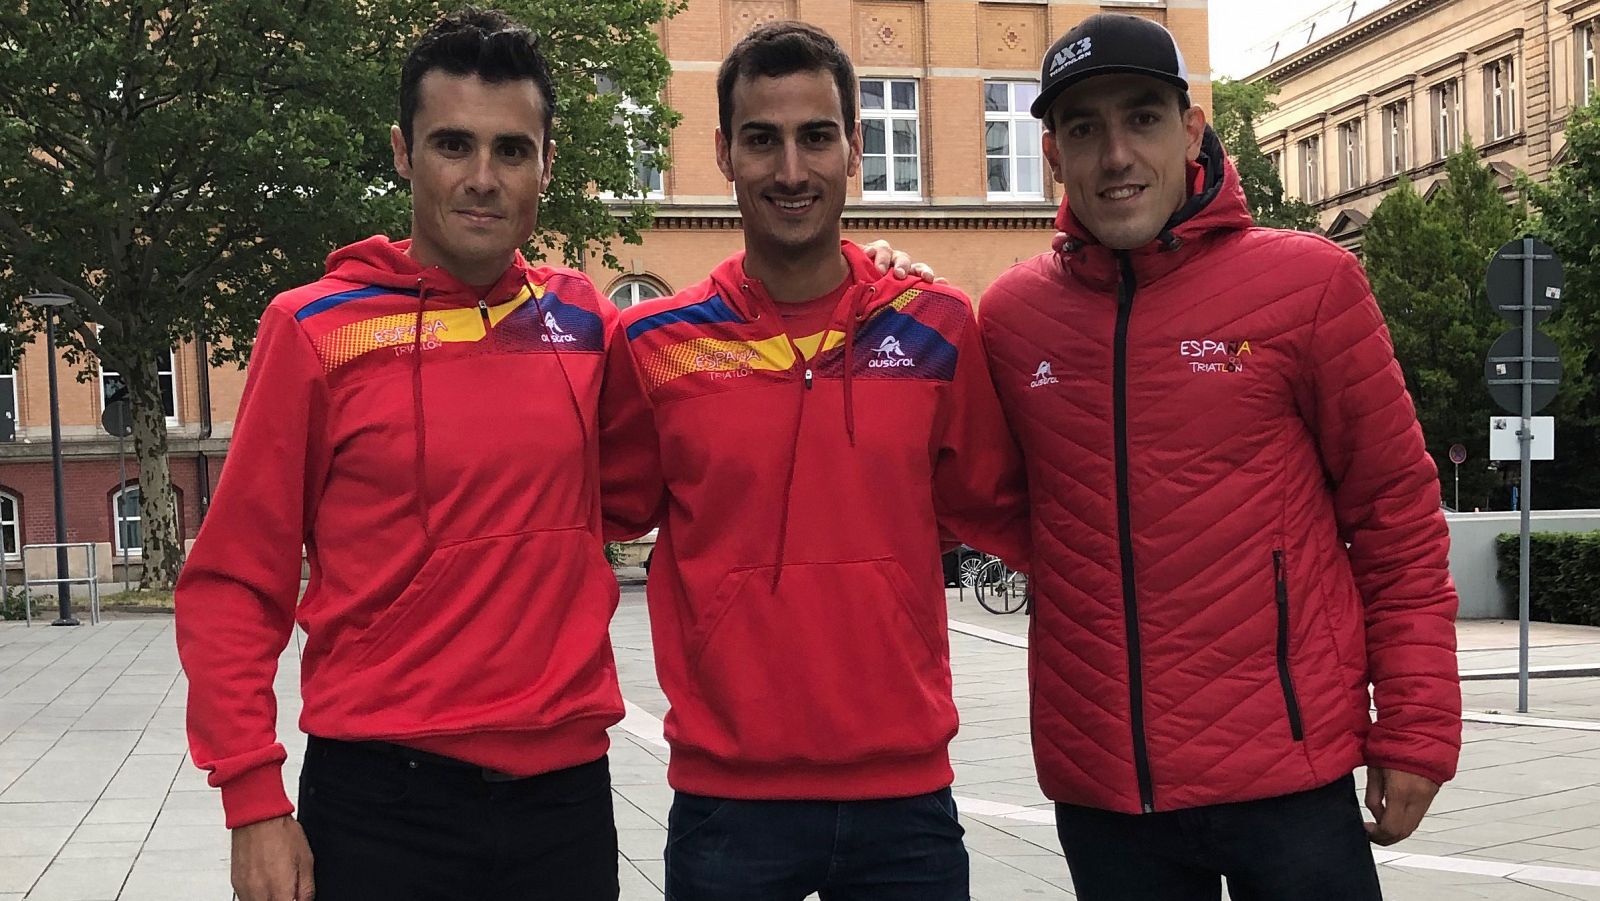 Los triatletas españoles Javier Gómez Noya (i), Mario Mola (c) y Fernando Alarza (d).